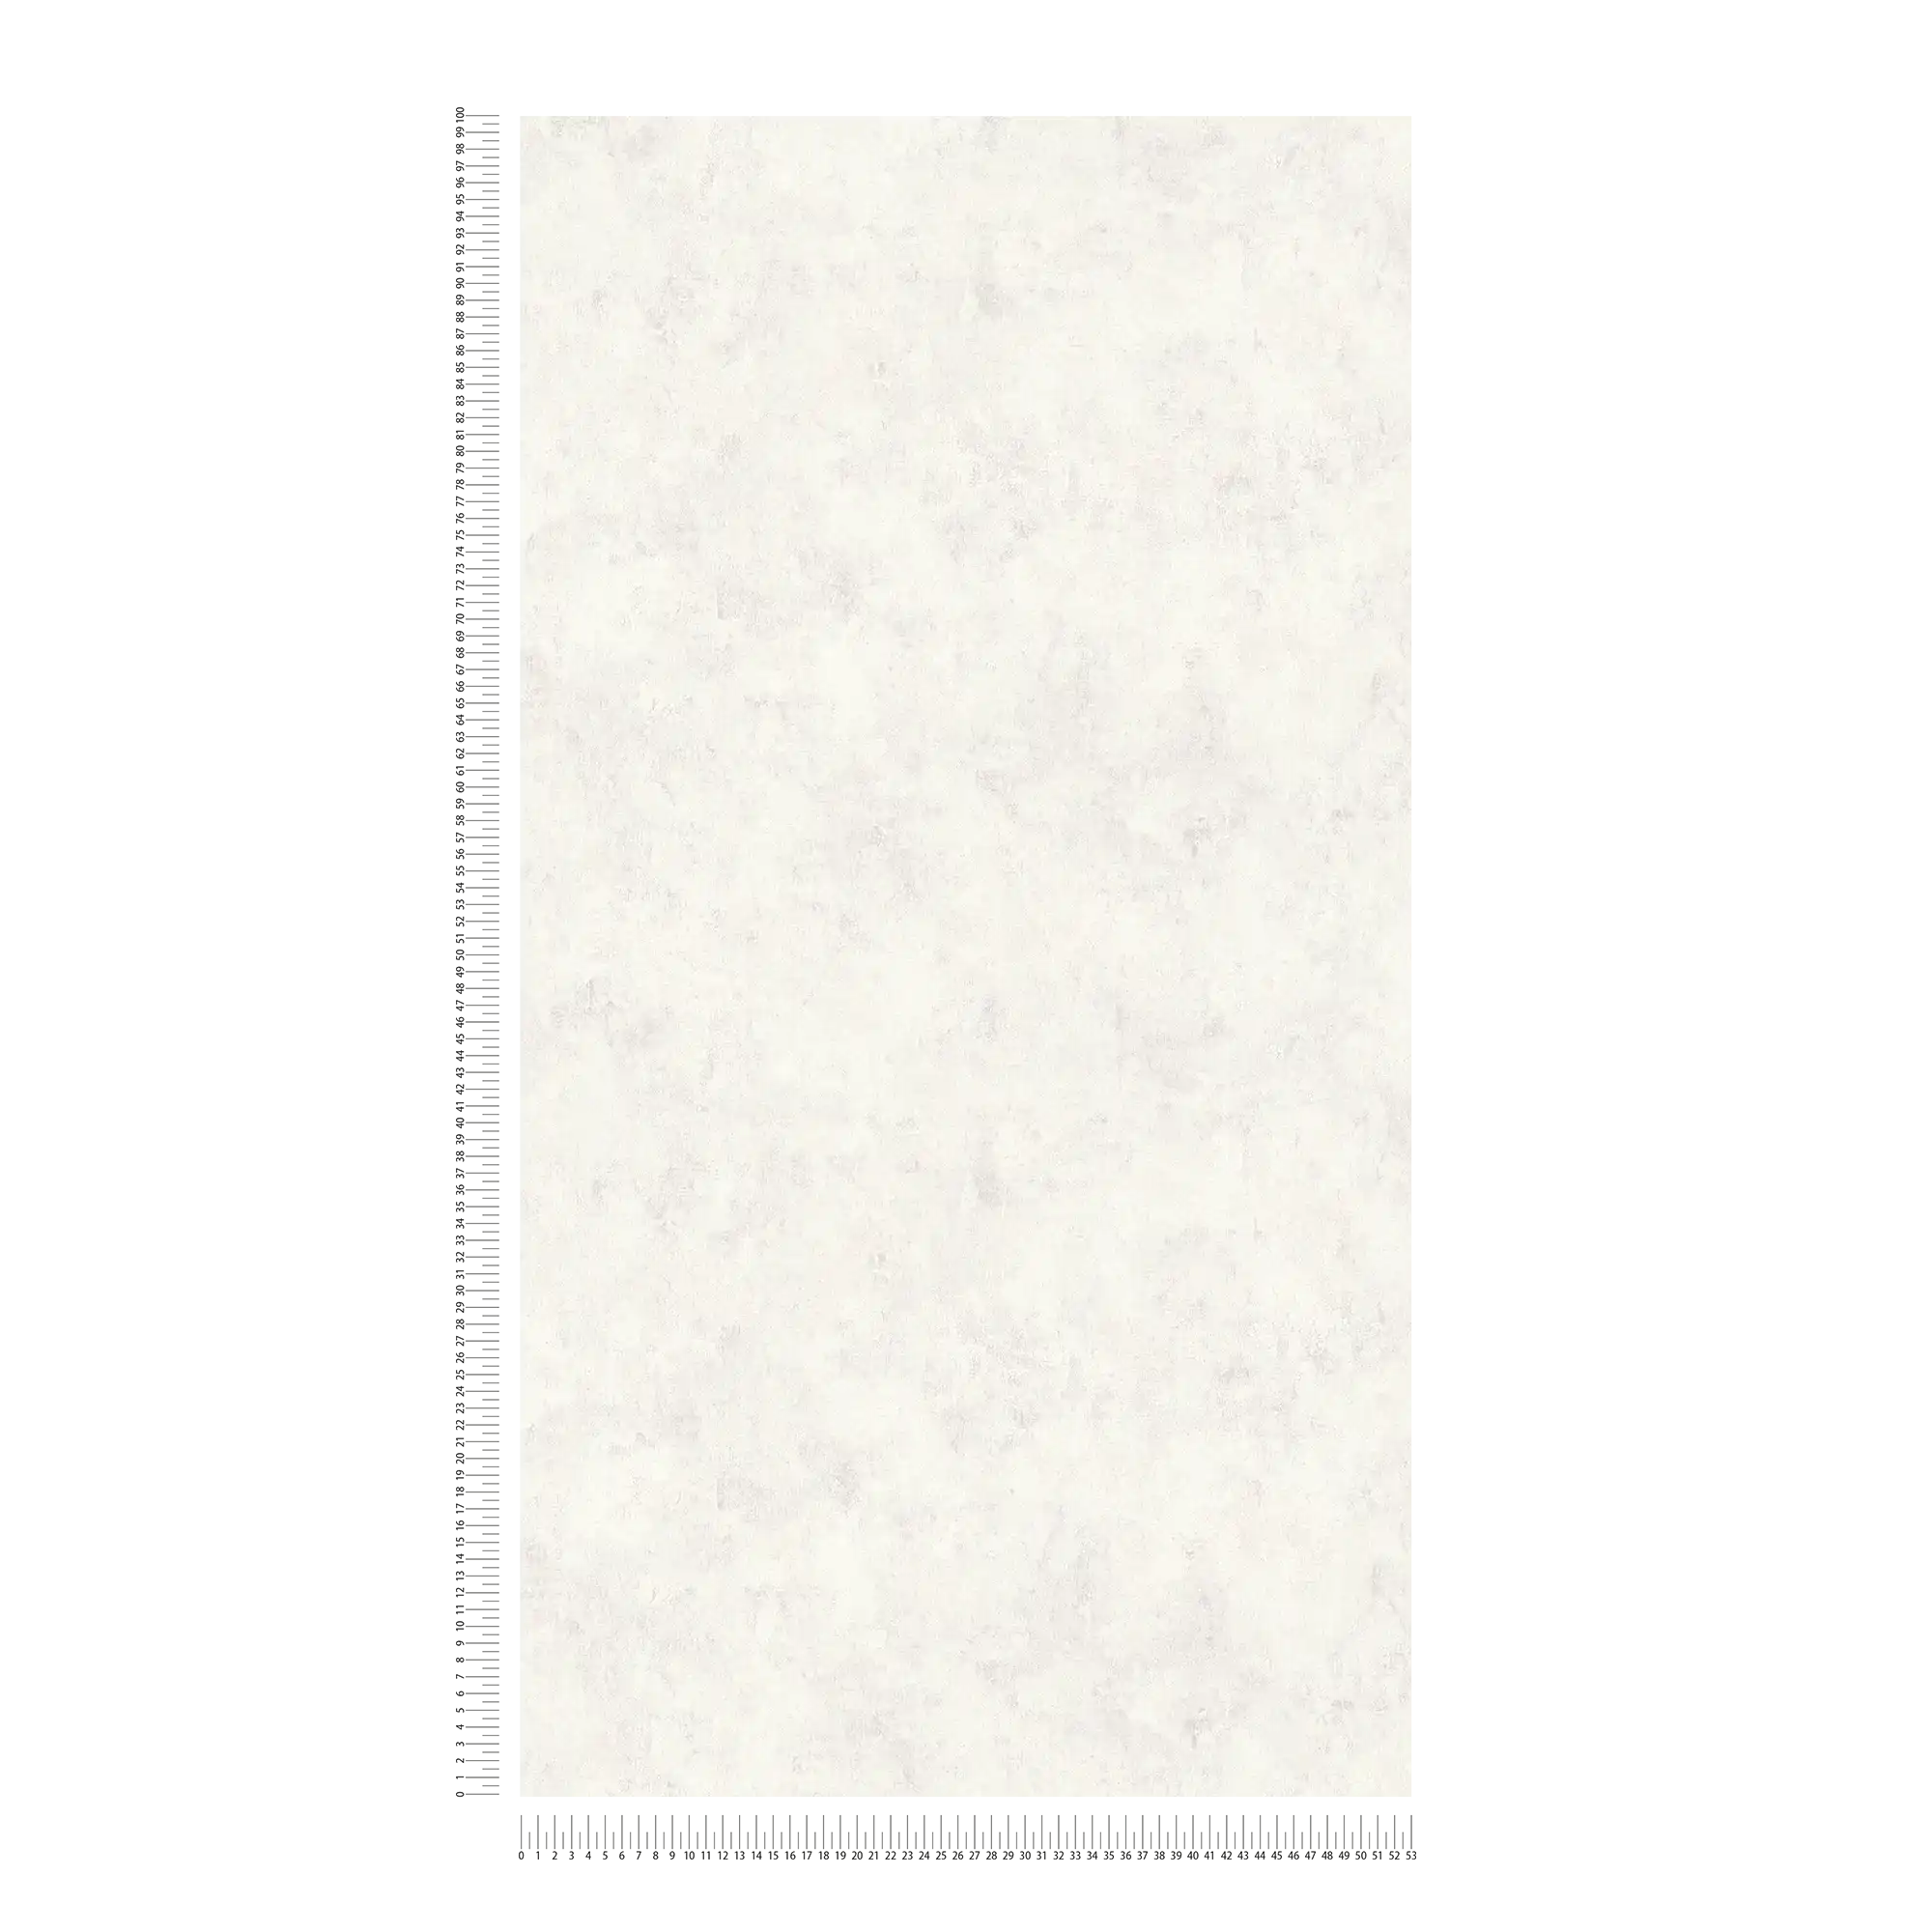             Carta da parati effetto cemento grigio chiaro con tratteggio, motivo a texture ed effetto lucido
        